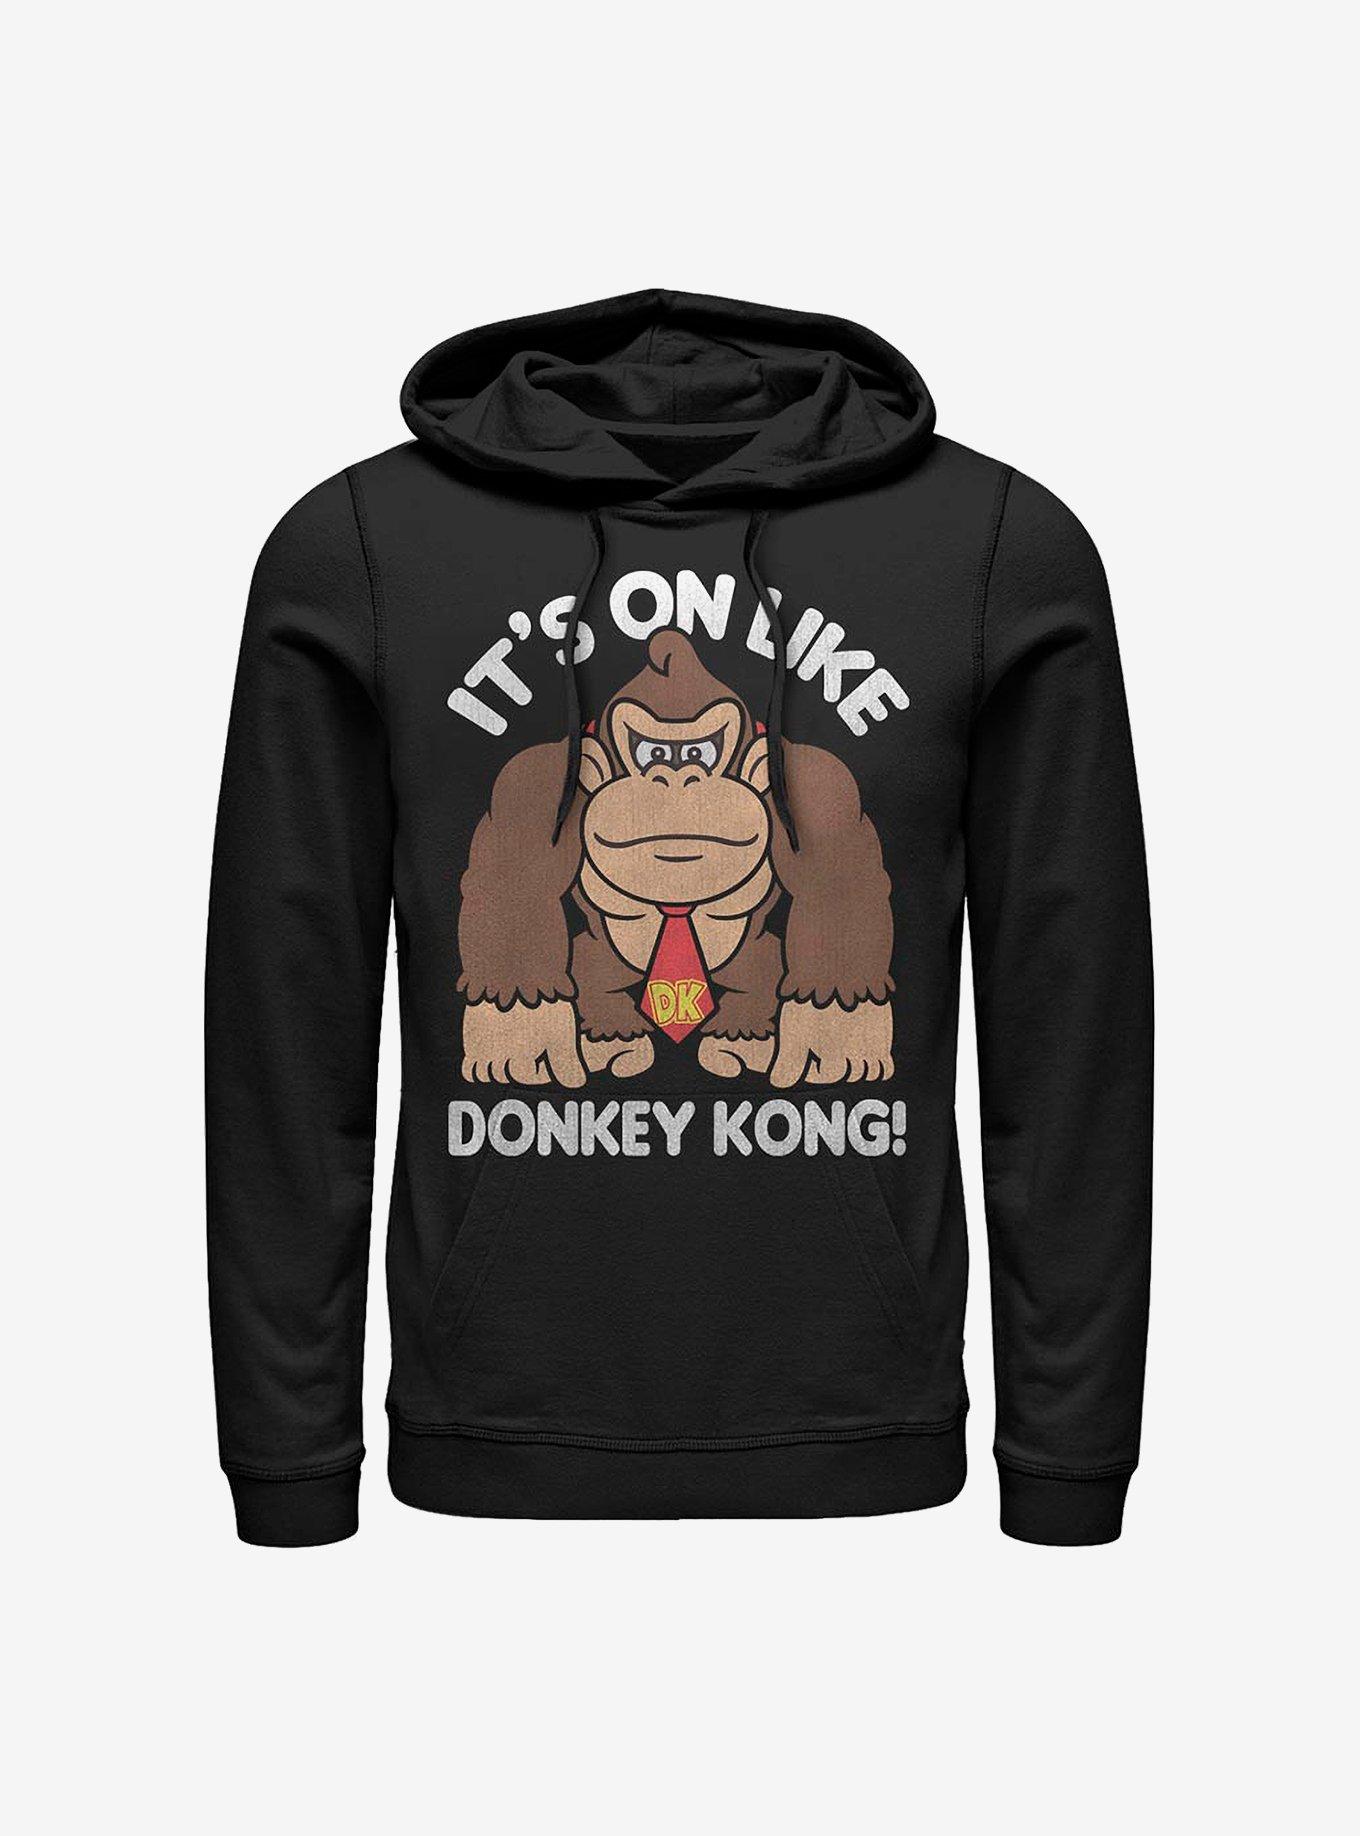 Nintendo Donkey Kong Fist Pump Hoodie, BLACK, hi-res